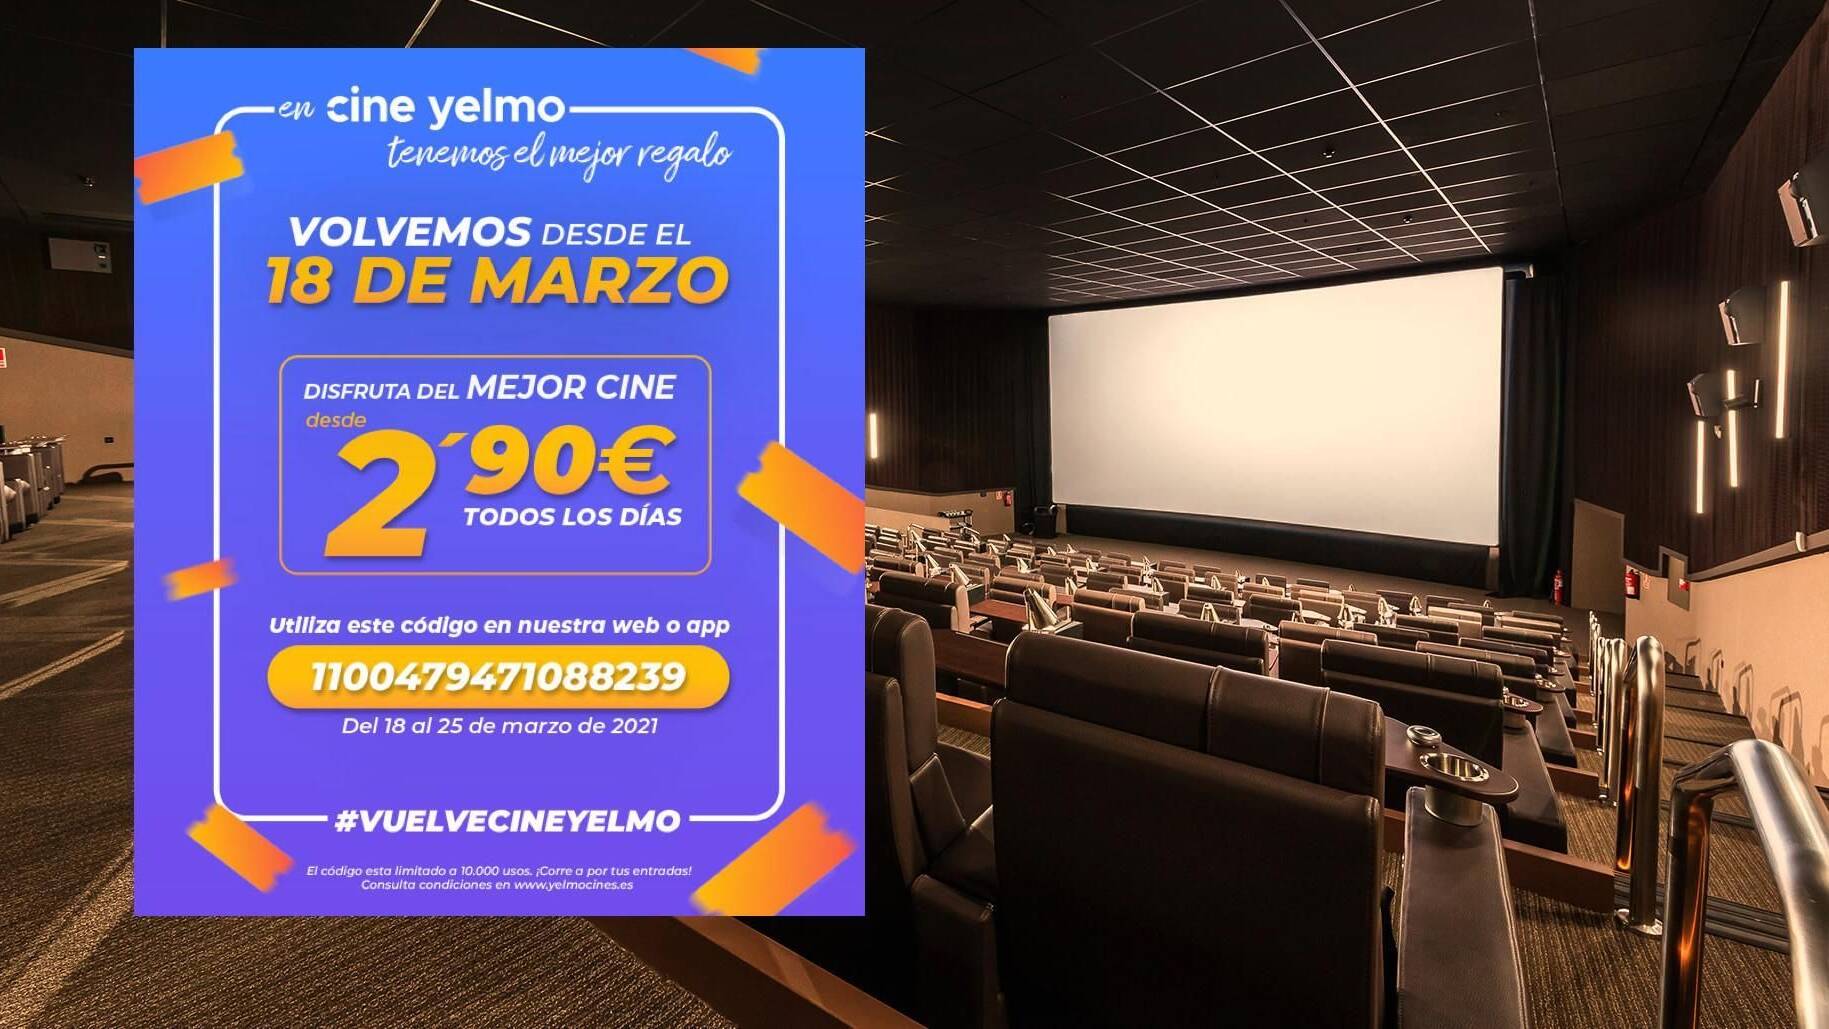 Yelmo nos invita volver a los cines con entradas a 2,90 euros - Vandal